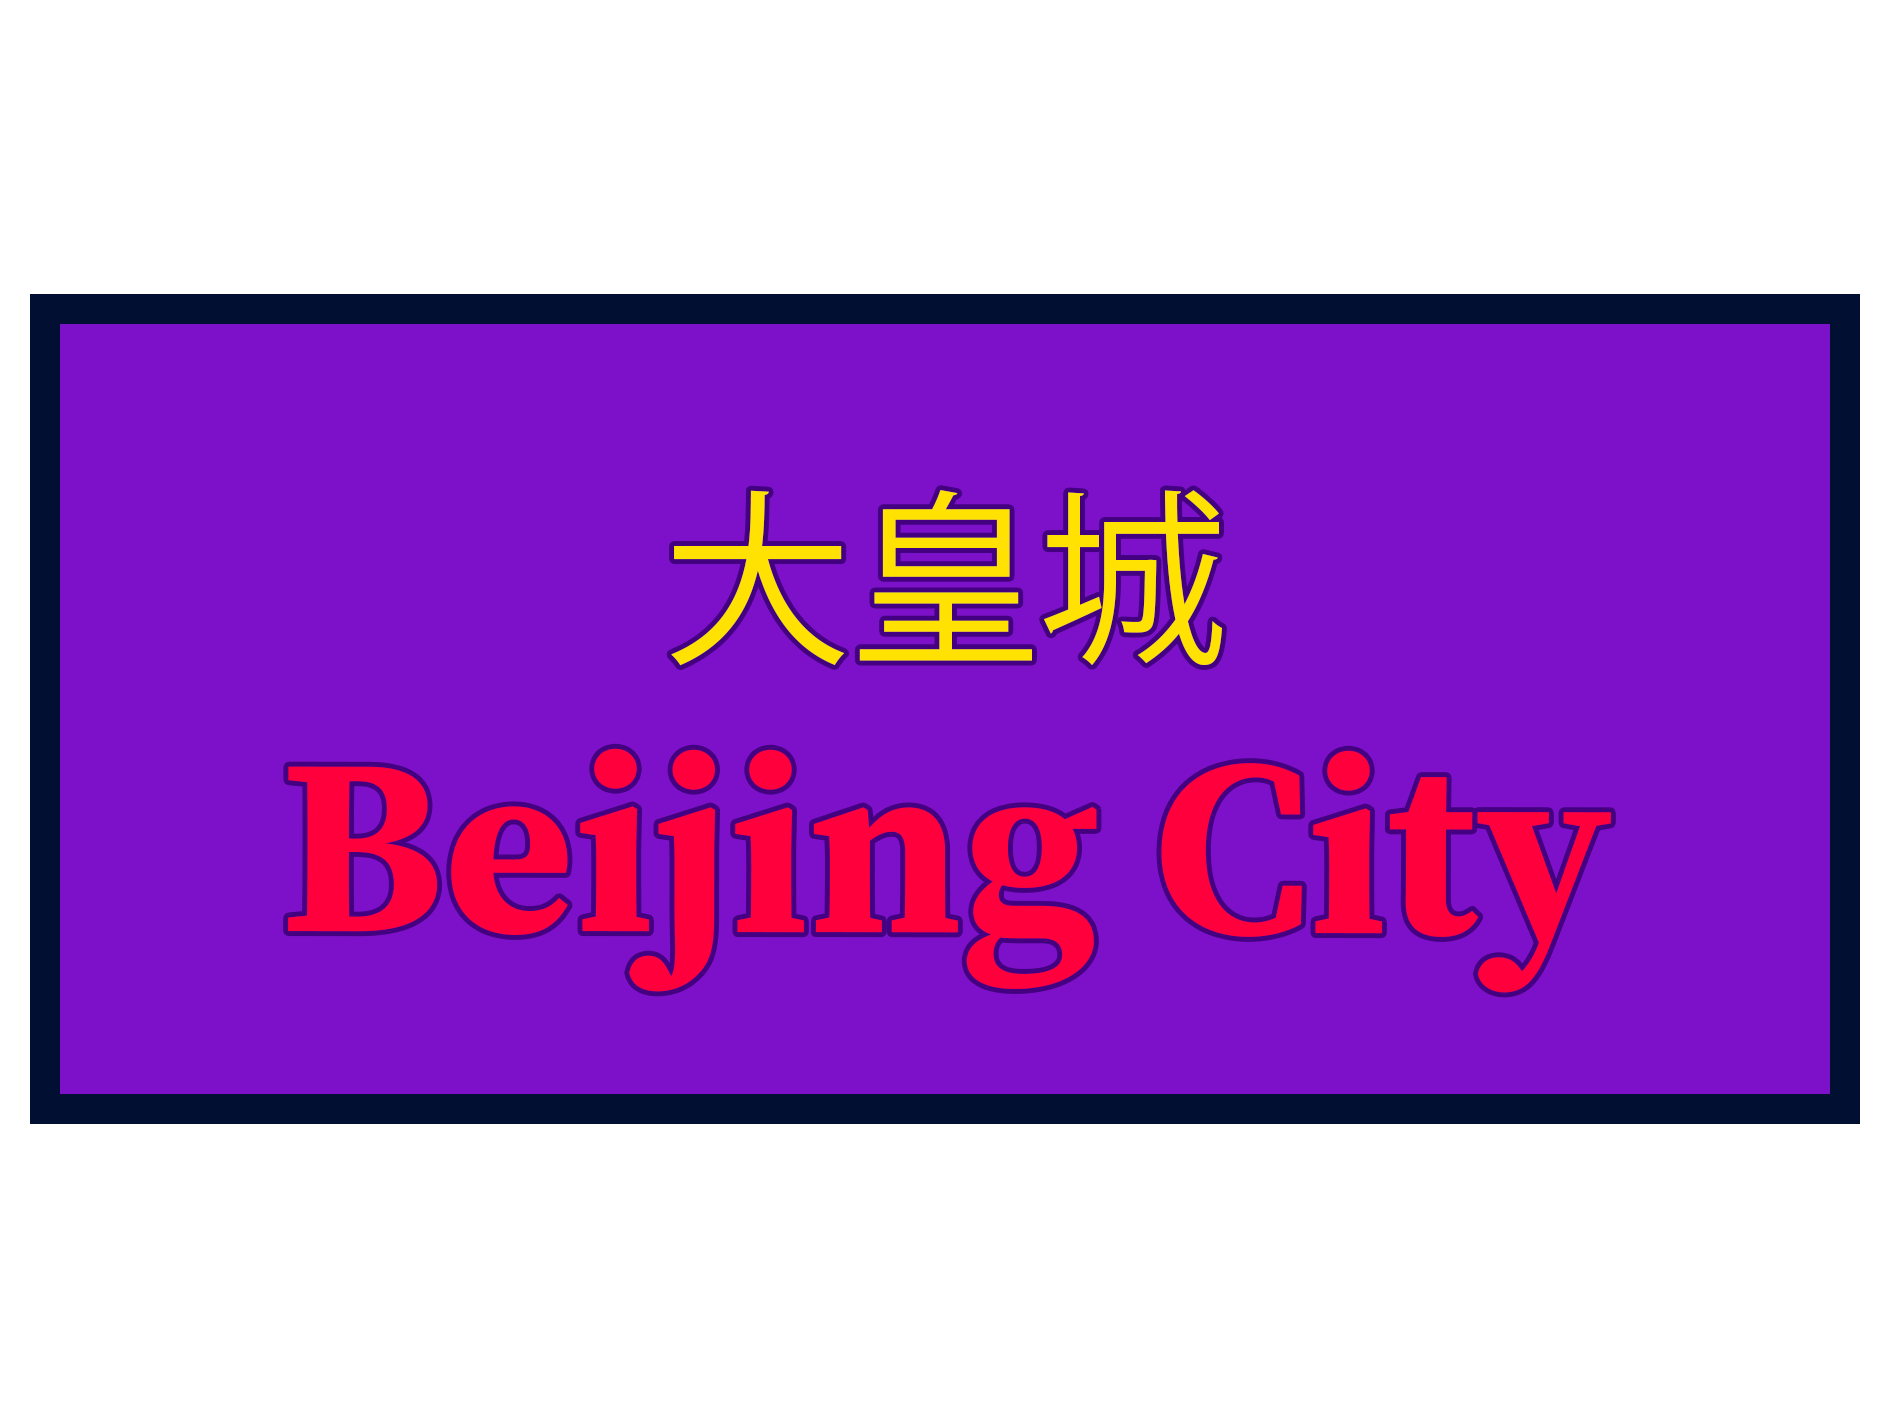 Beijing City Takeaway Congleton